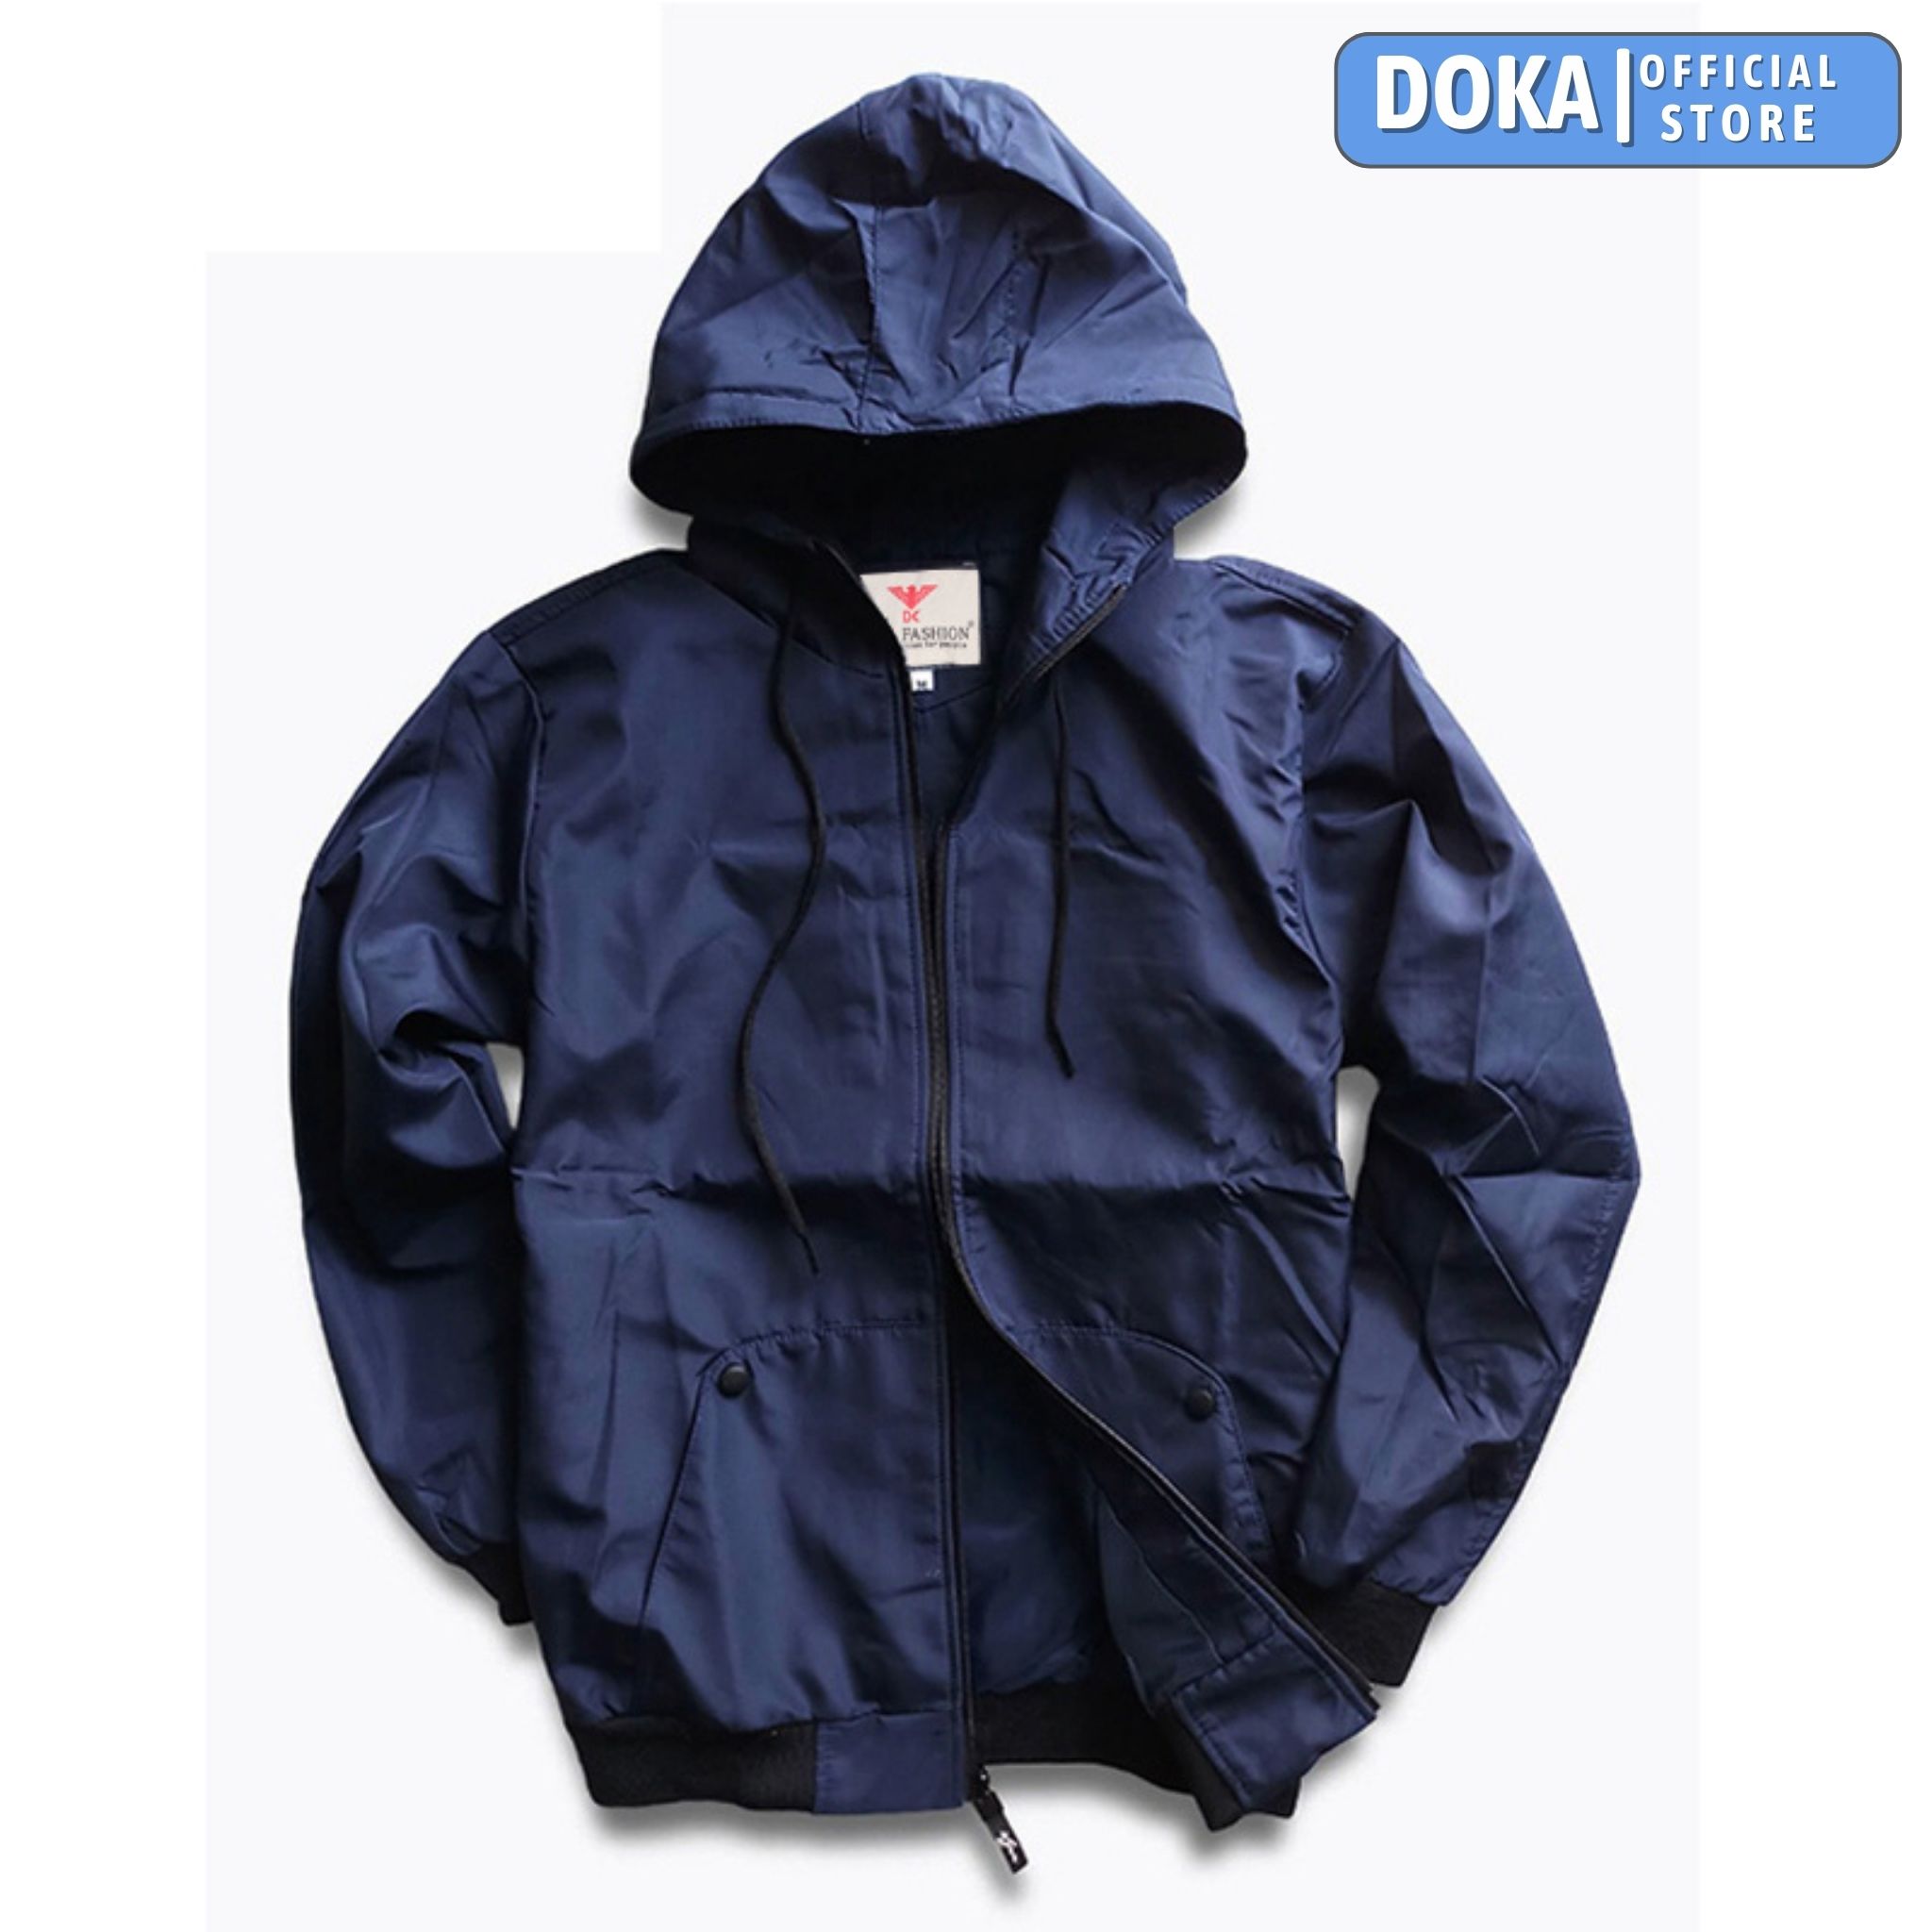 Áo khoác dù nam Dokafashion phối nón có túi trong và 2 túi ngoài dây kéo, vải dù ấm áp, cản gió hiệu quả EZAK23